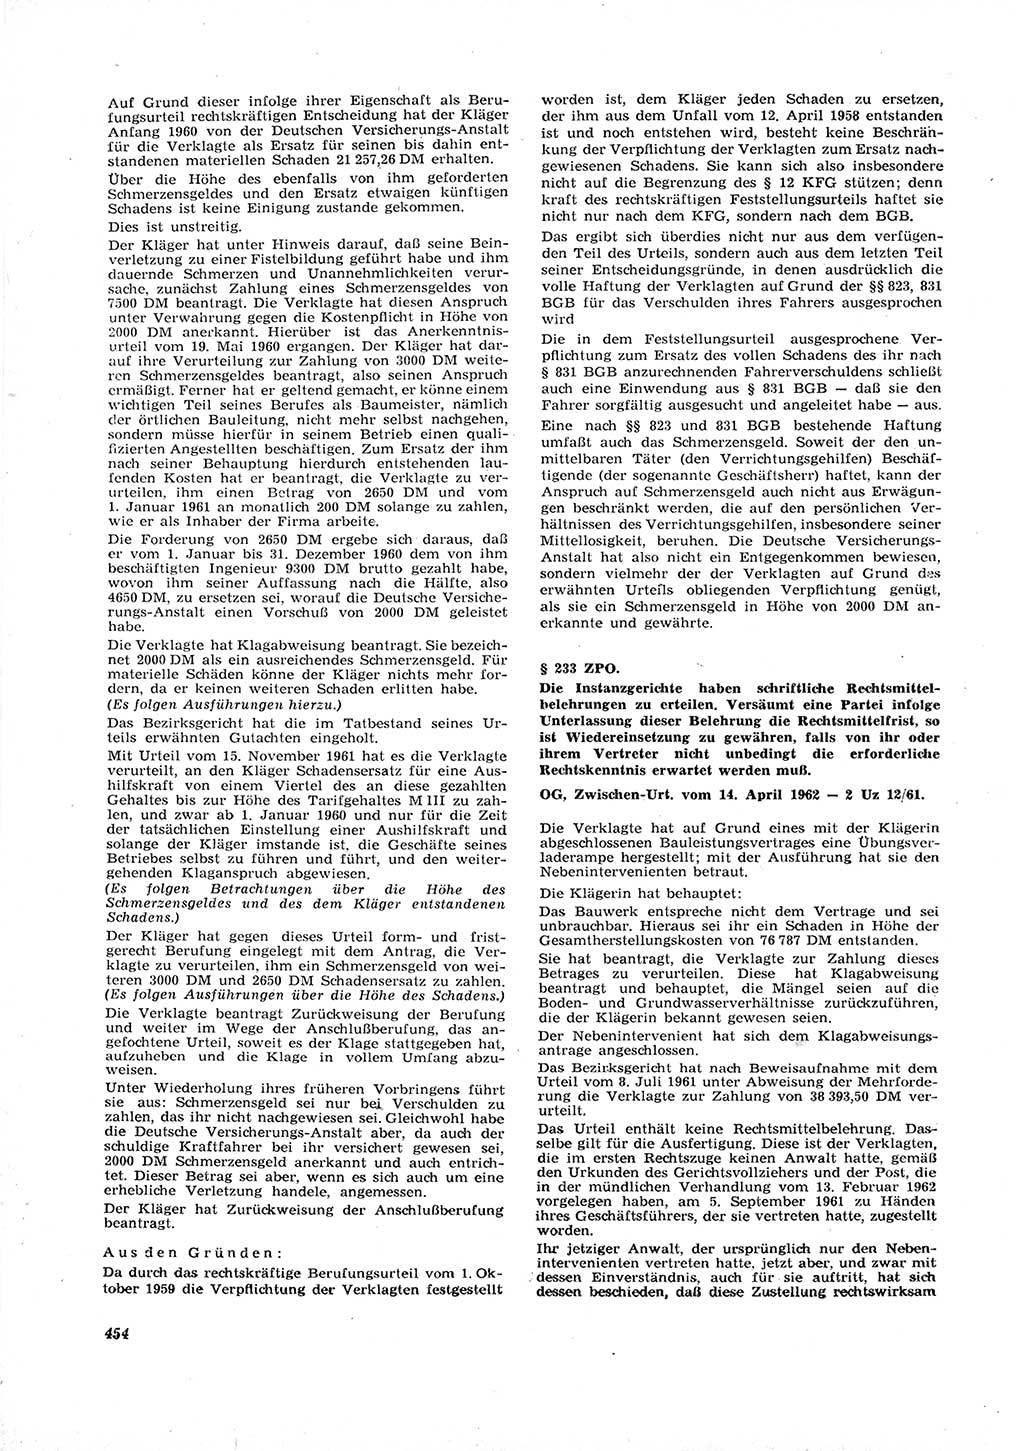 Neue Justiz (NJ), Zeitschrift für Recht und Rechtswissenschaft [Deutsche Demokratische Republik (DDR)], 16. Jahrgang 1962, Seite 454 (NJ DDR 1962, S. 454)